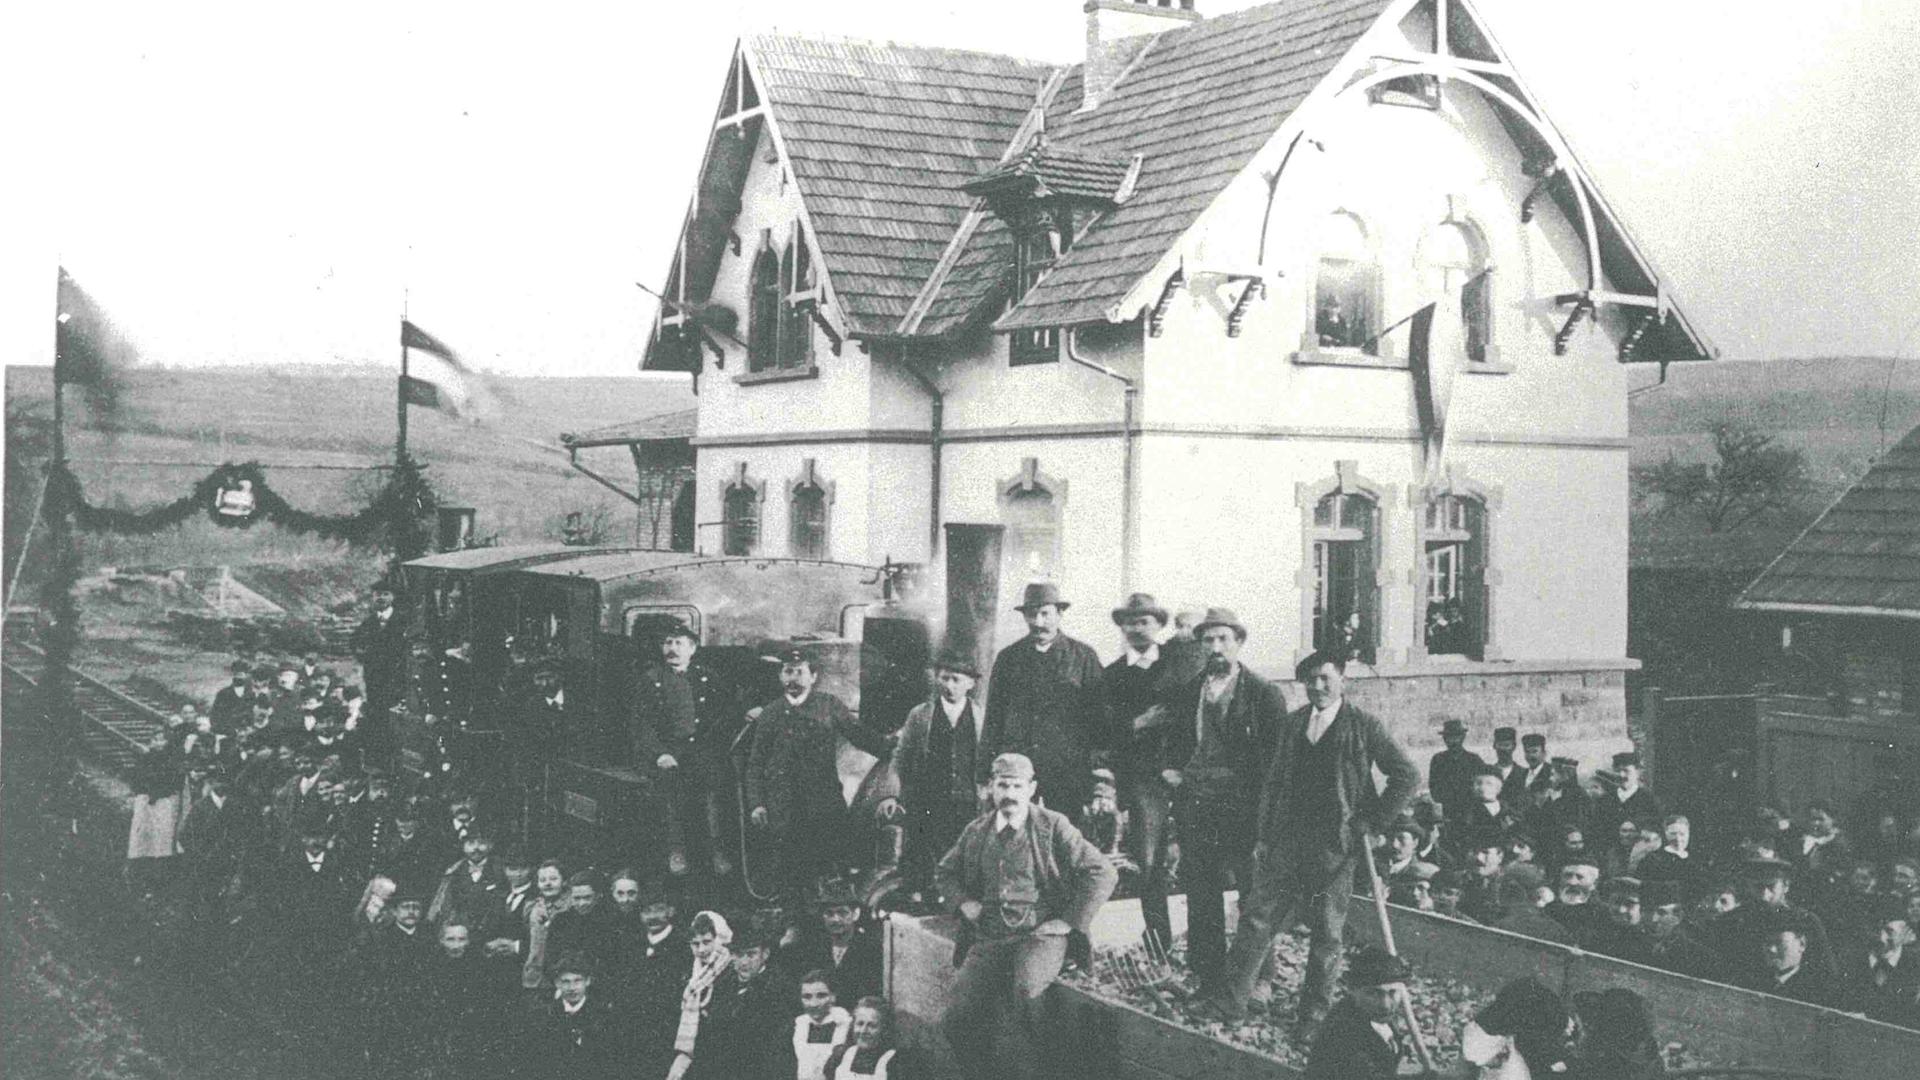 Bild des ersten Materialzugs in Ellmendingen. Rund um den Zug vor dem Bahnhof stehen zahlreiche Menschen.